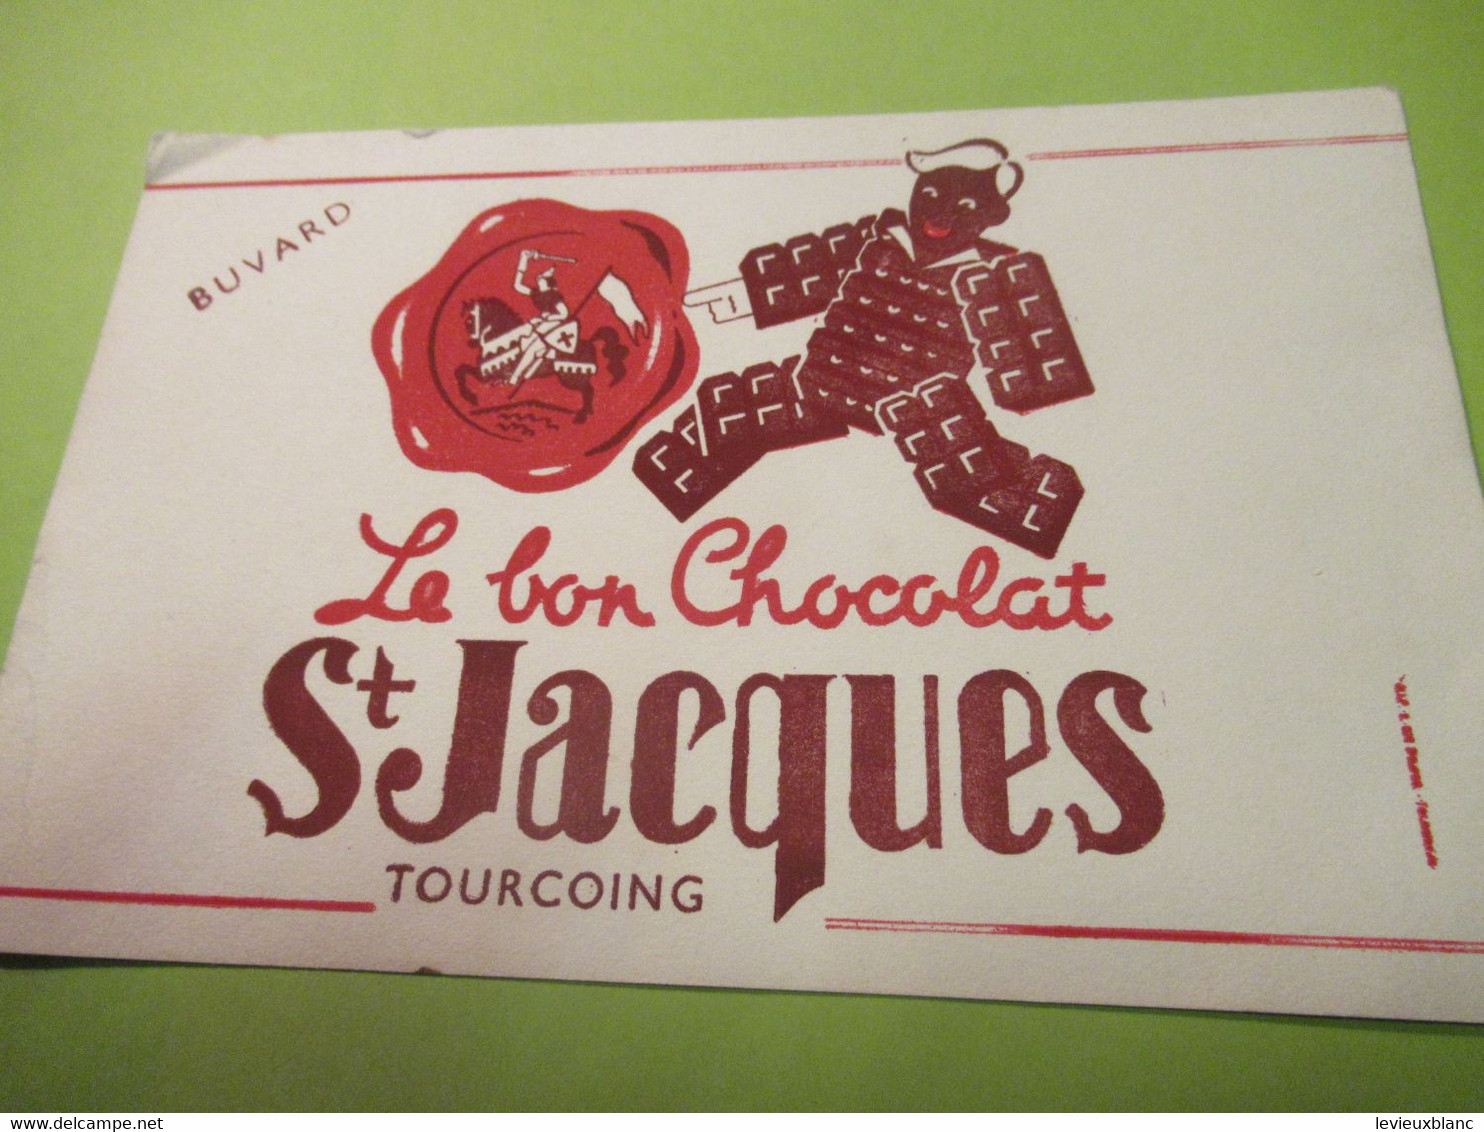 Buvard Ancien/CHOCOLAT SAINT-JACQUES /Le Bon Chocolat St-Jacques /Vers 1955-1965   BUV623 - Cocoa & Chocolat